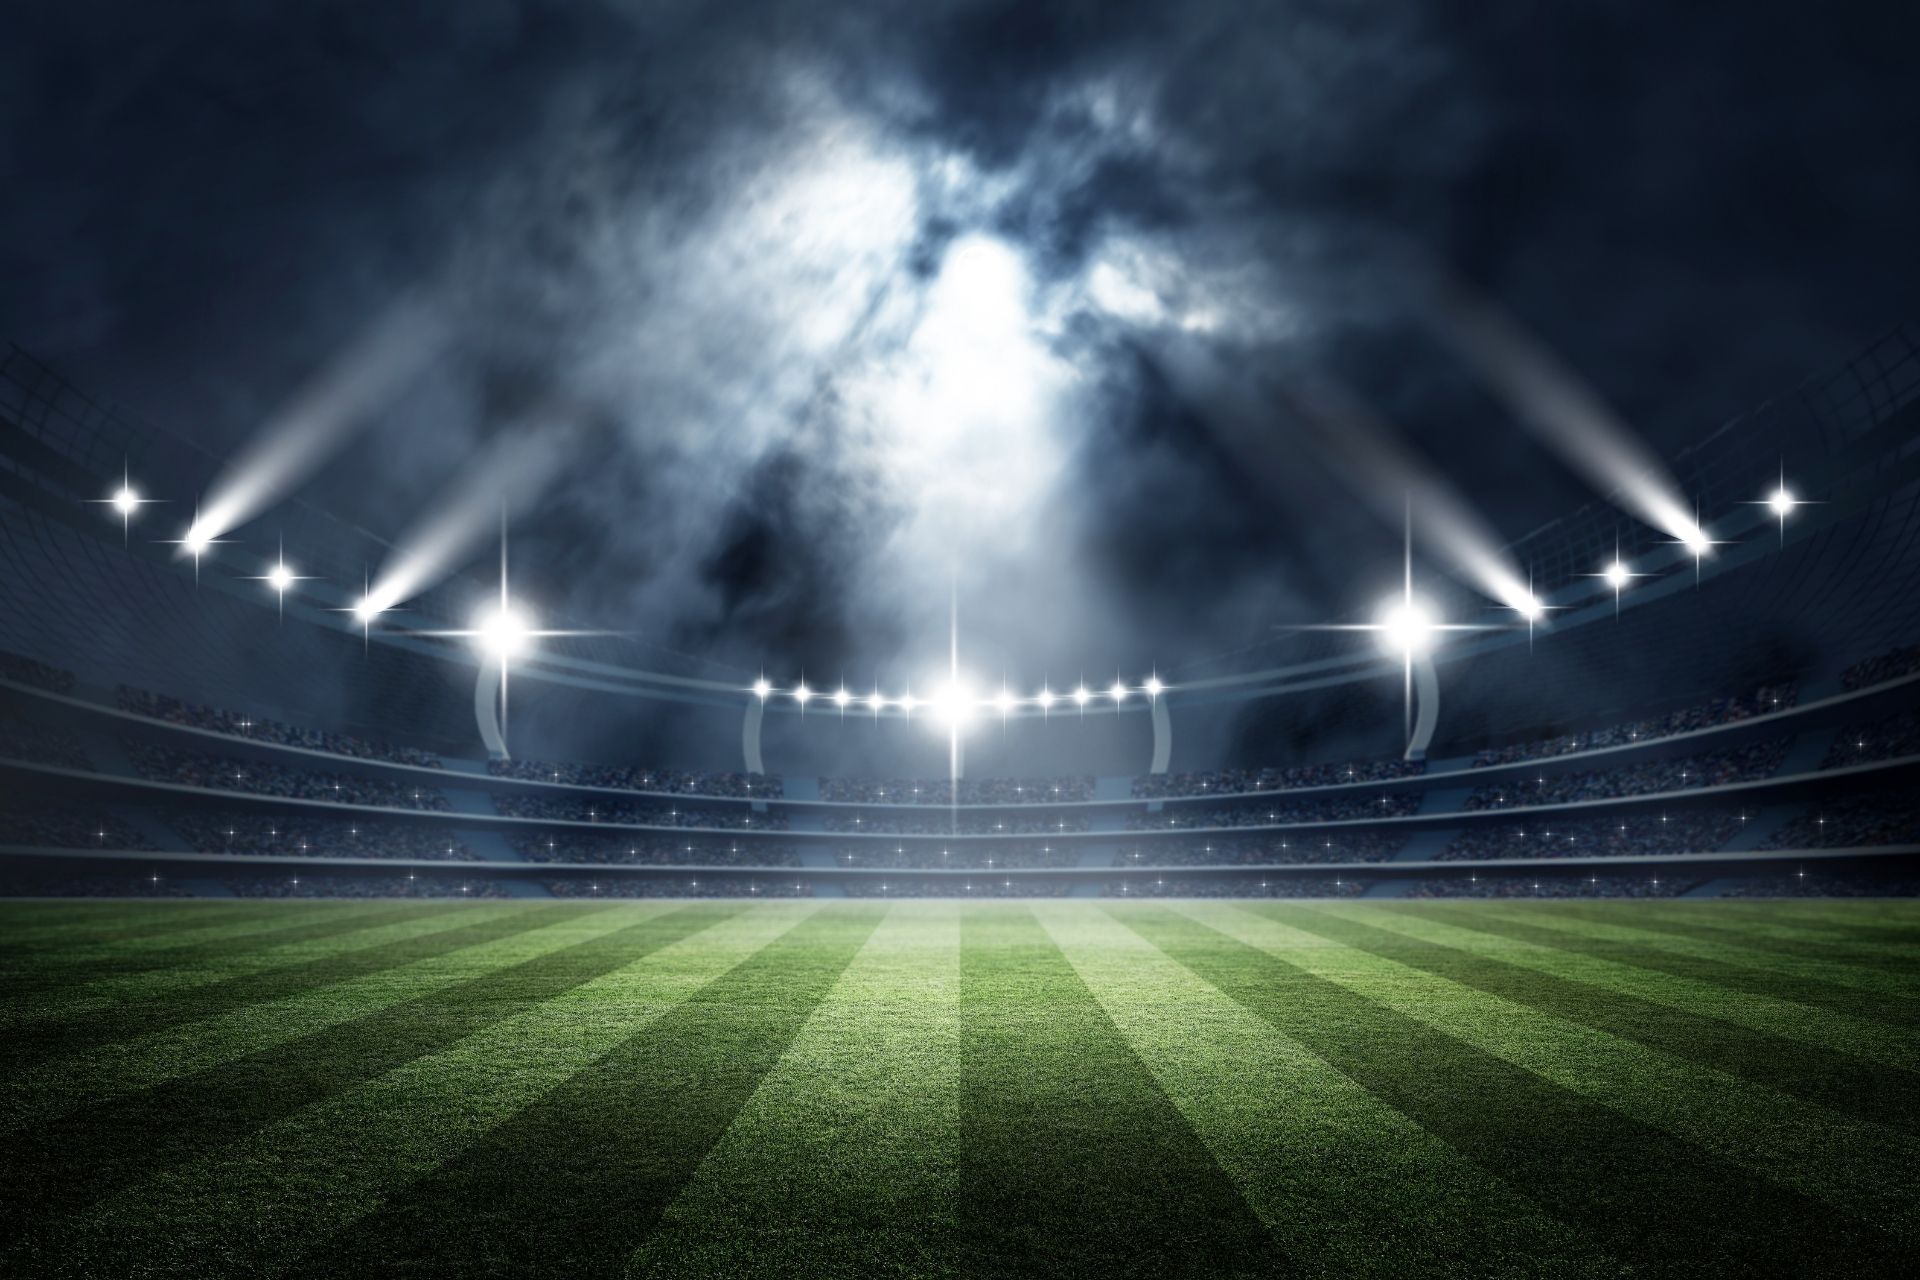 Mecz między Osasuna oraz Valladolid dnia 2022-10-30 13:00 na stadionie Estadio El Sadar - końcowy wynik 2-0